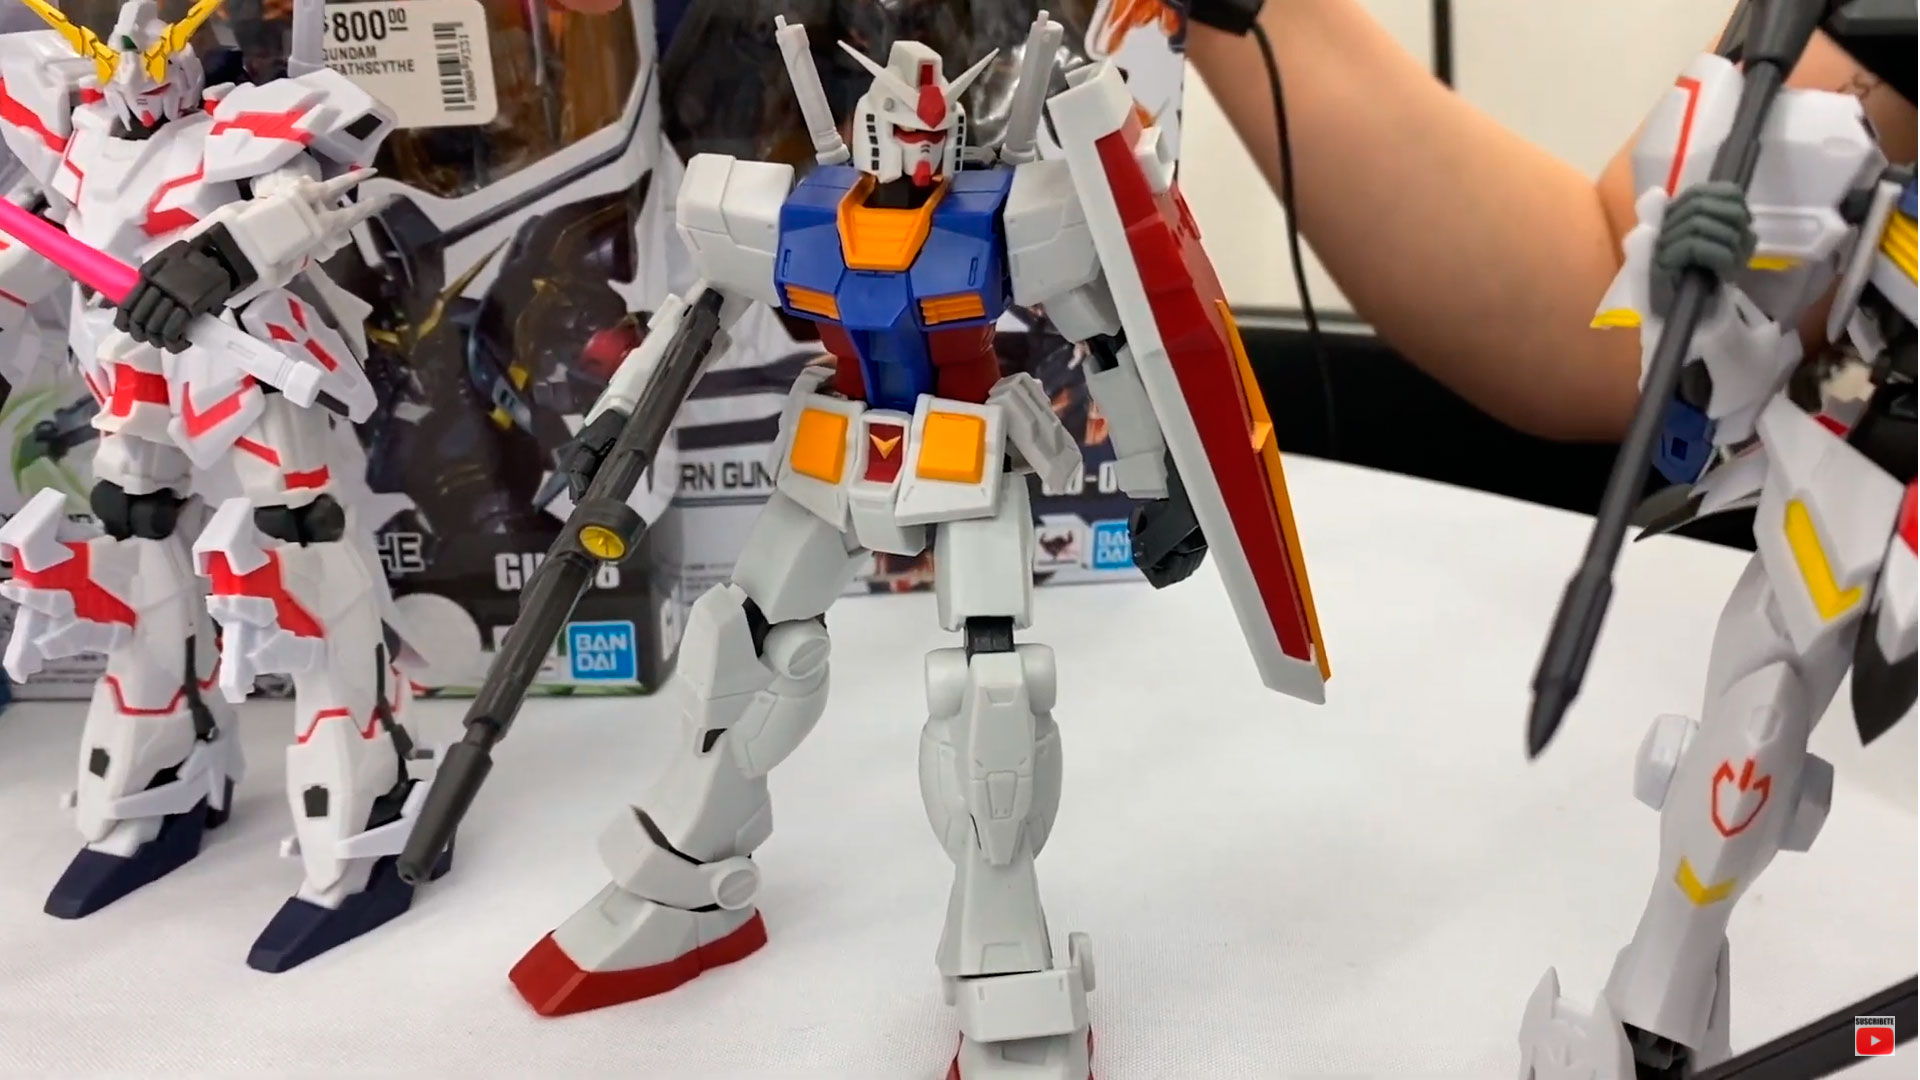 Manifiesto Infectar Asombro Gundam Robots Archives - Juegos Juguetes y Coleccionables